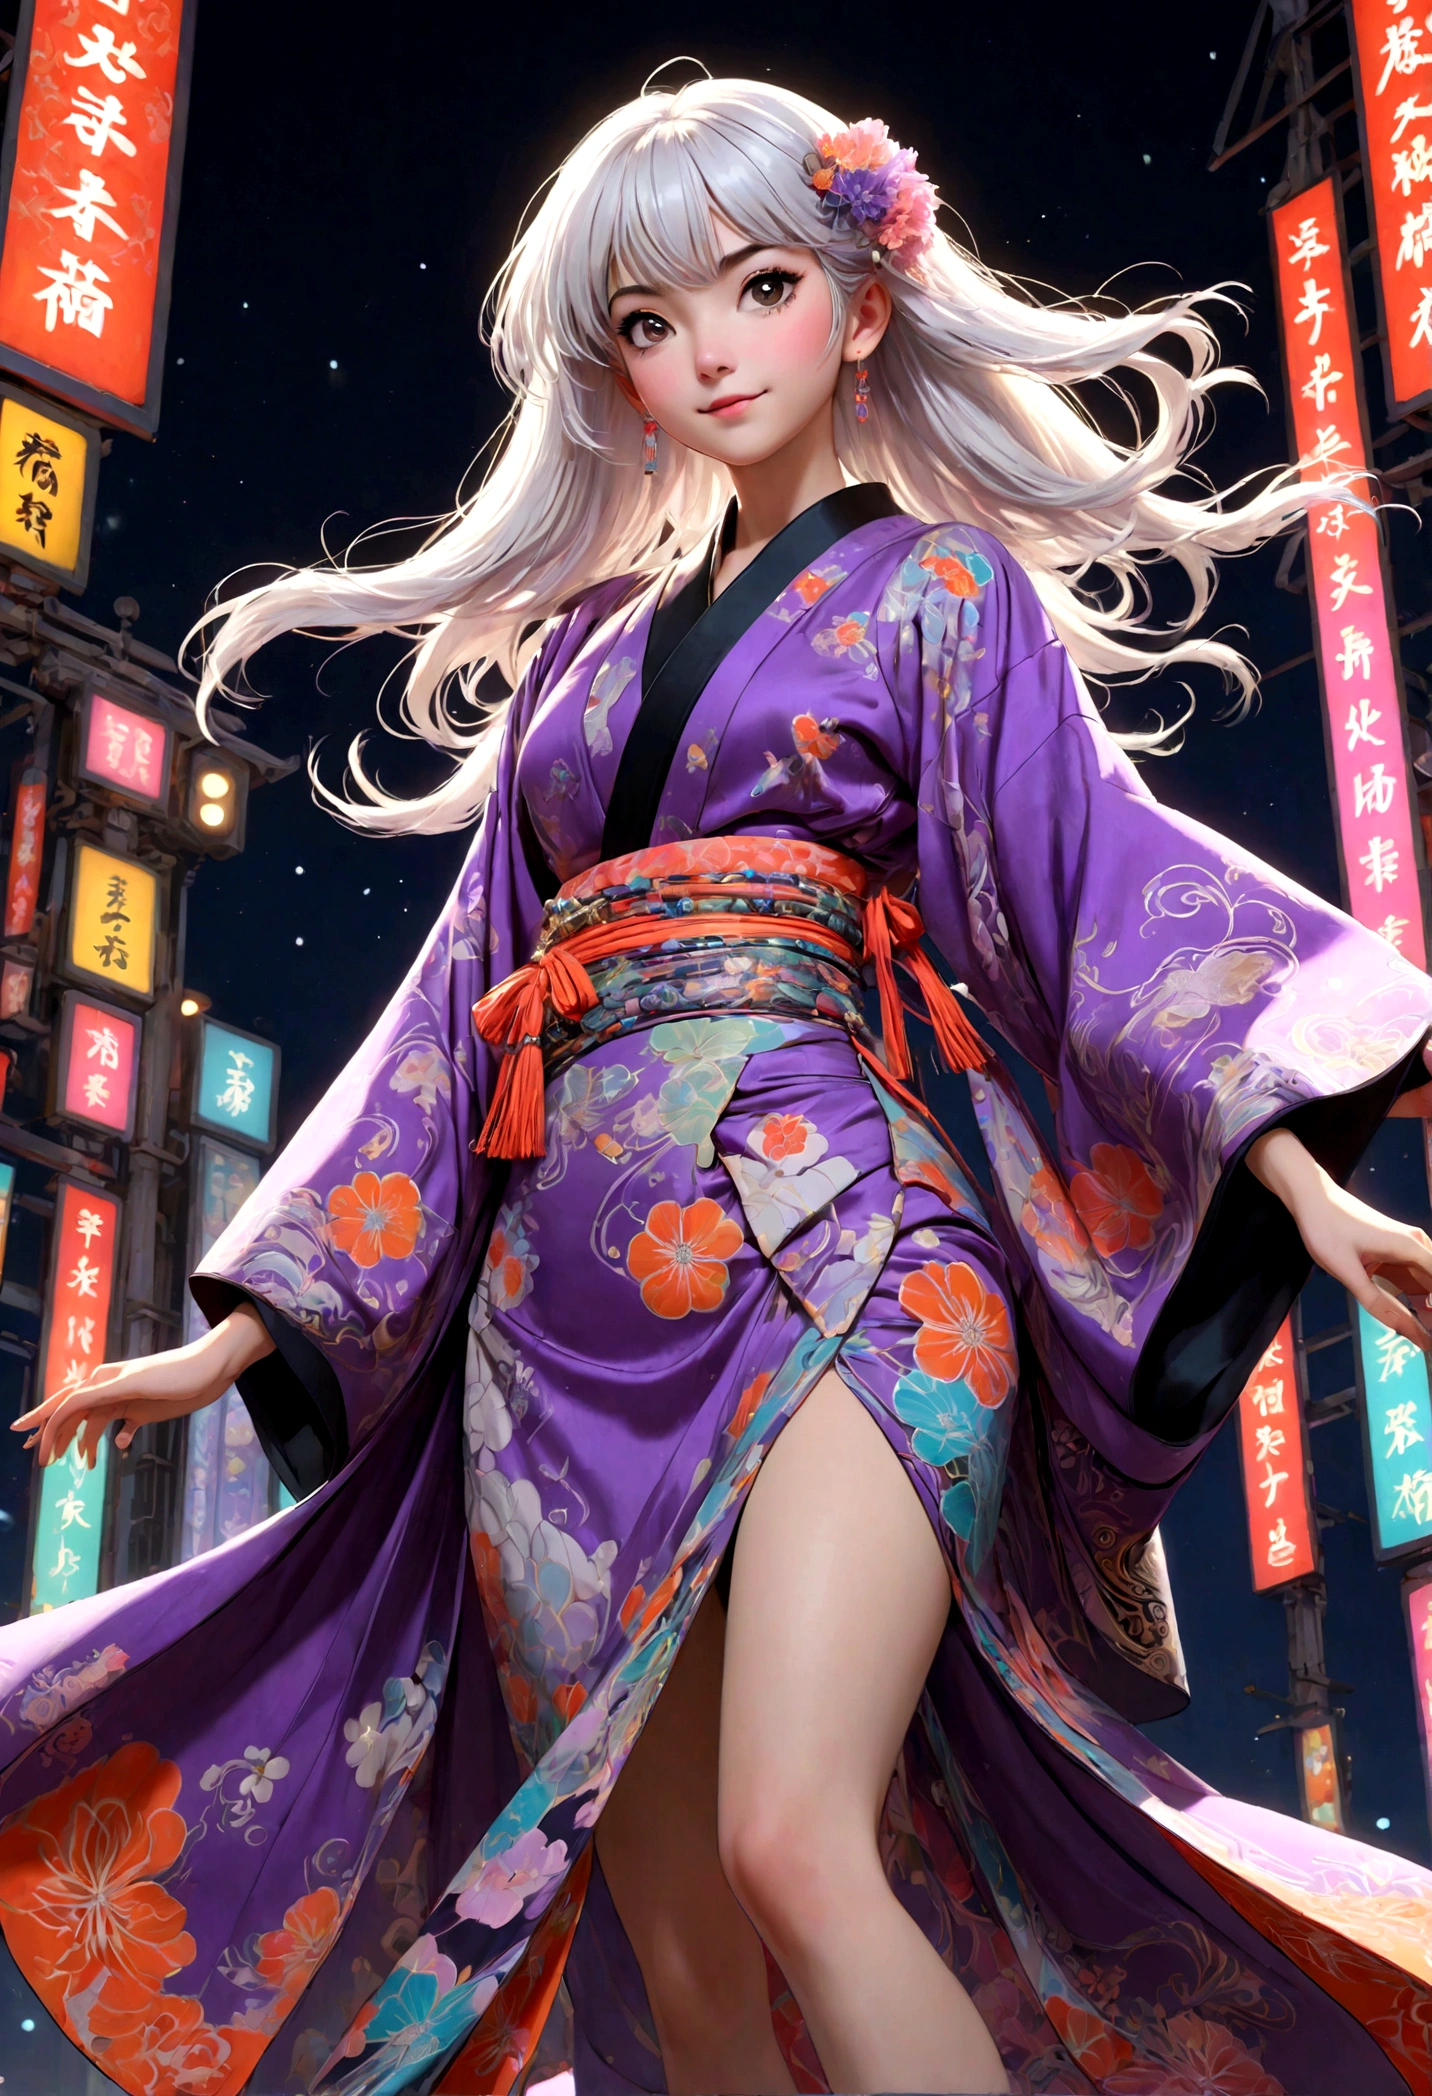 (visage ultra détaillé, détourner le regard:1.3), (Illustration fantastique avec gothique & Ukiyo-e & Bande dessinée), (La scène regarde la piste d&#39;en bas:1.4), (Tout le corps, Une jeune femme aux cheveux blancs, frange émoussée, Cheveux très longs et ébouriffés, yeux lavande), (Elle saute, en chantant, dansant, et défiler sur un podium de défilé de mode dans un style avant-gardiste, kimono japonais futuriste de couleur néon, poses souriantes et audacieuses), (En arrière-plan, des lumières de différentes couleurs dans un style art nouveau voltigent)